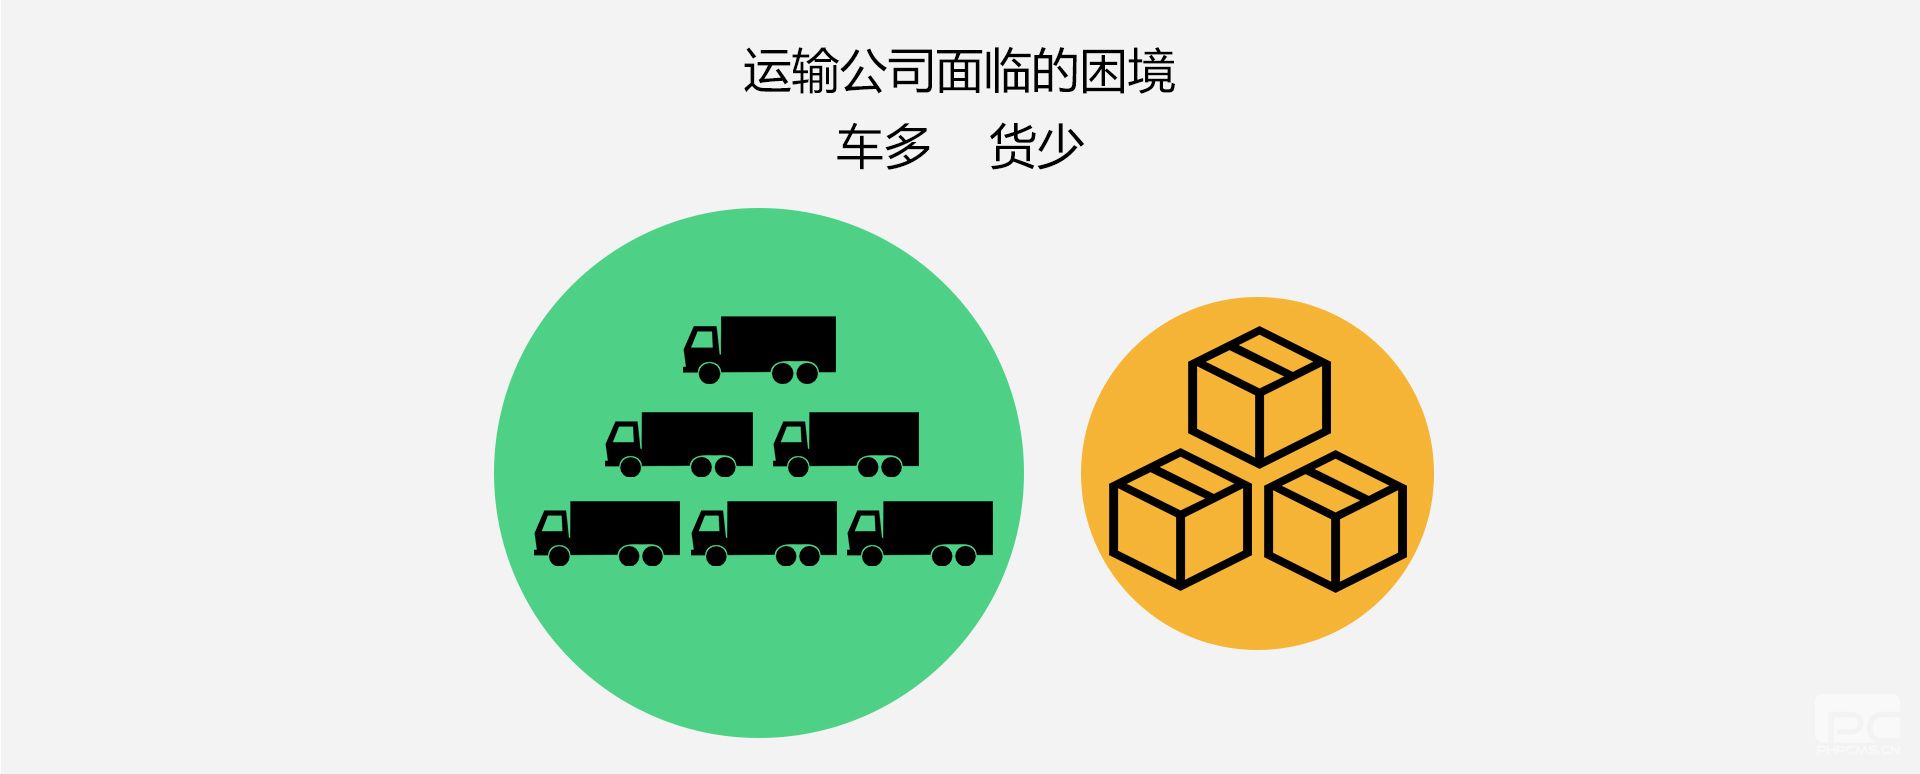 货掌柜运输企业解决方案2(www.huozhanggui.net)